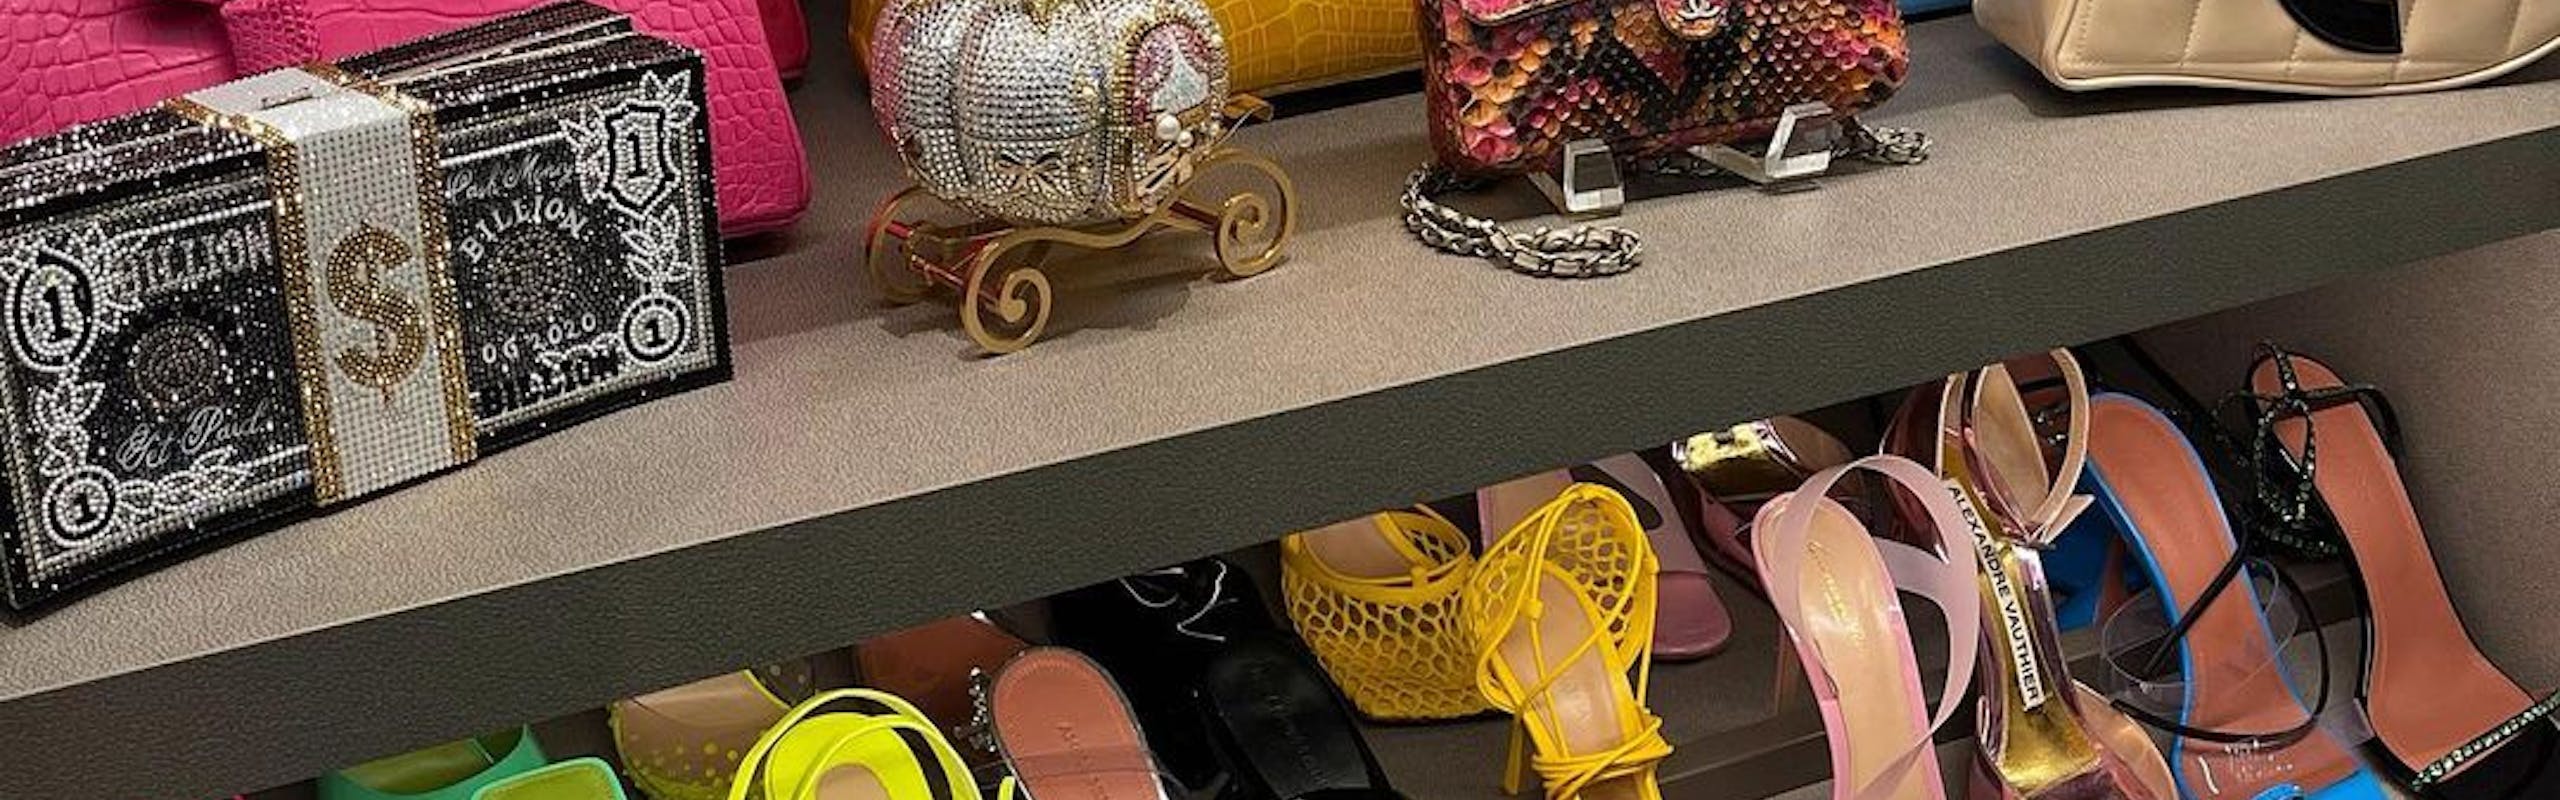 Les accessoires de Kylie Jenner. © Instagram @kyliejenner